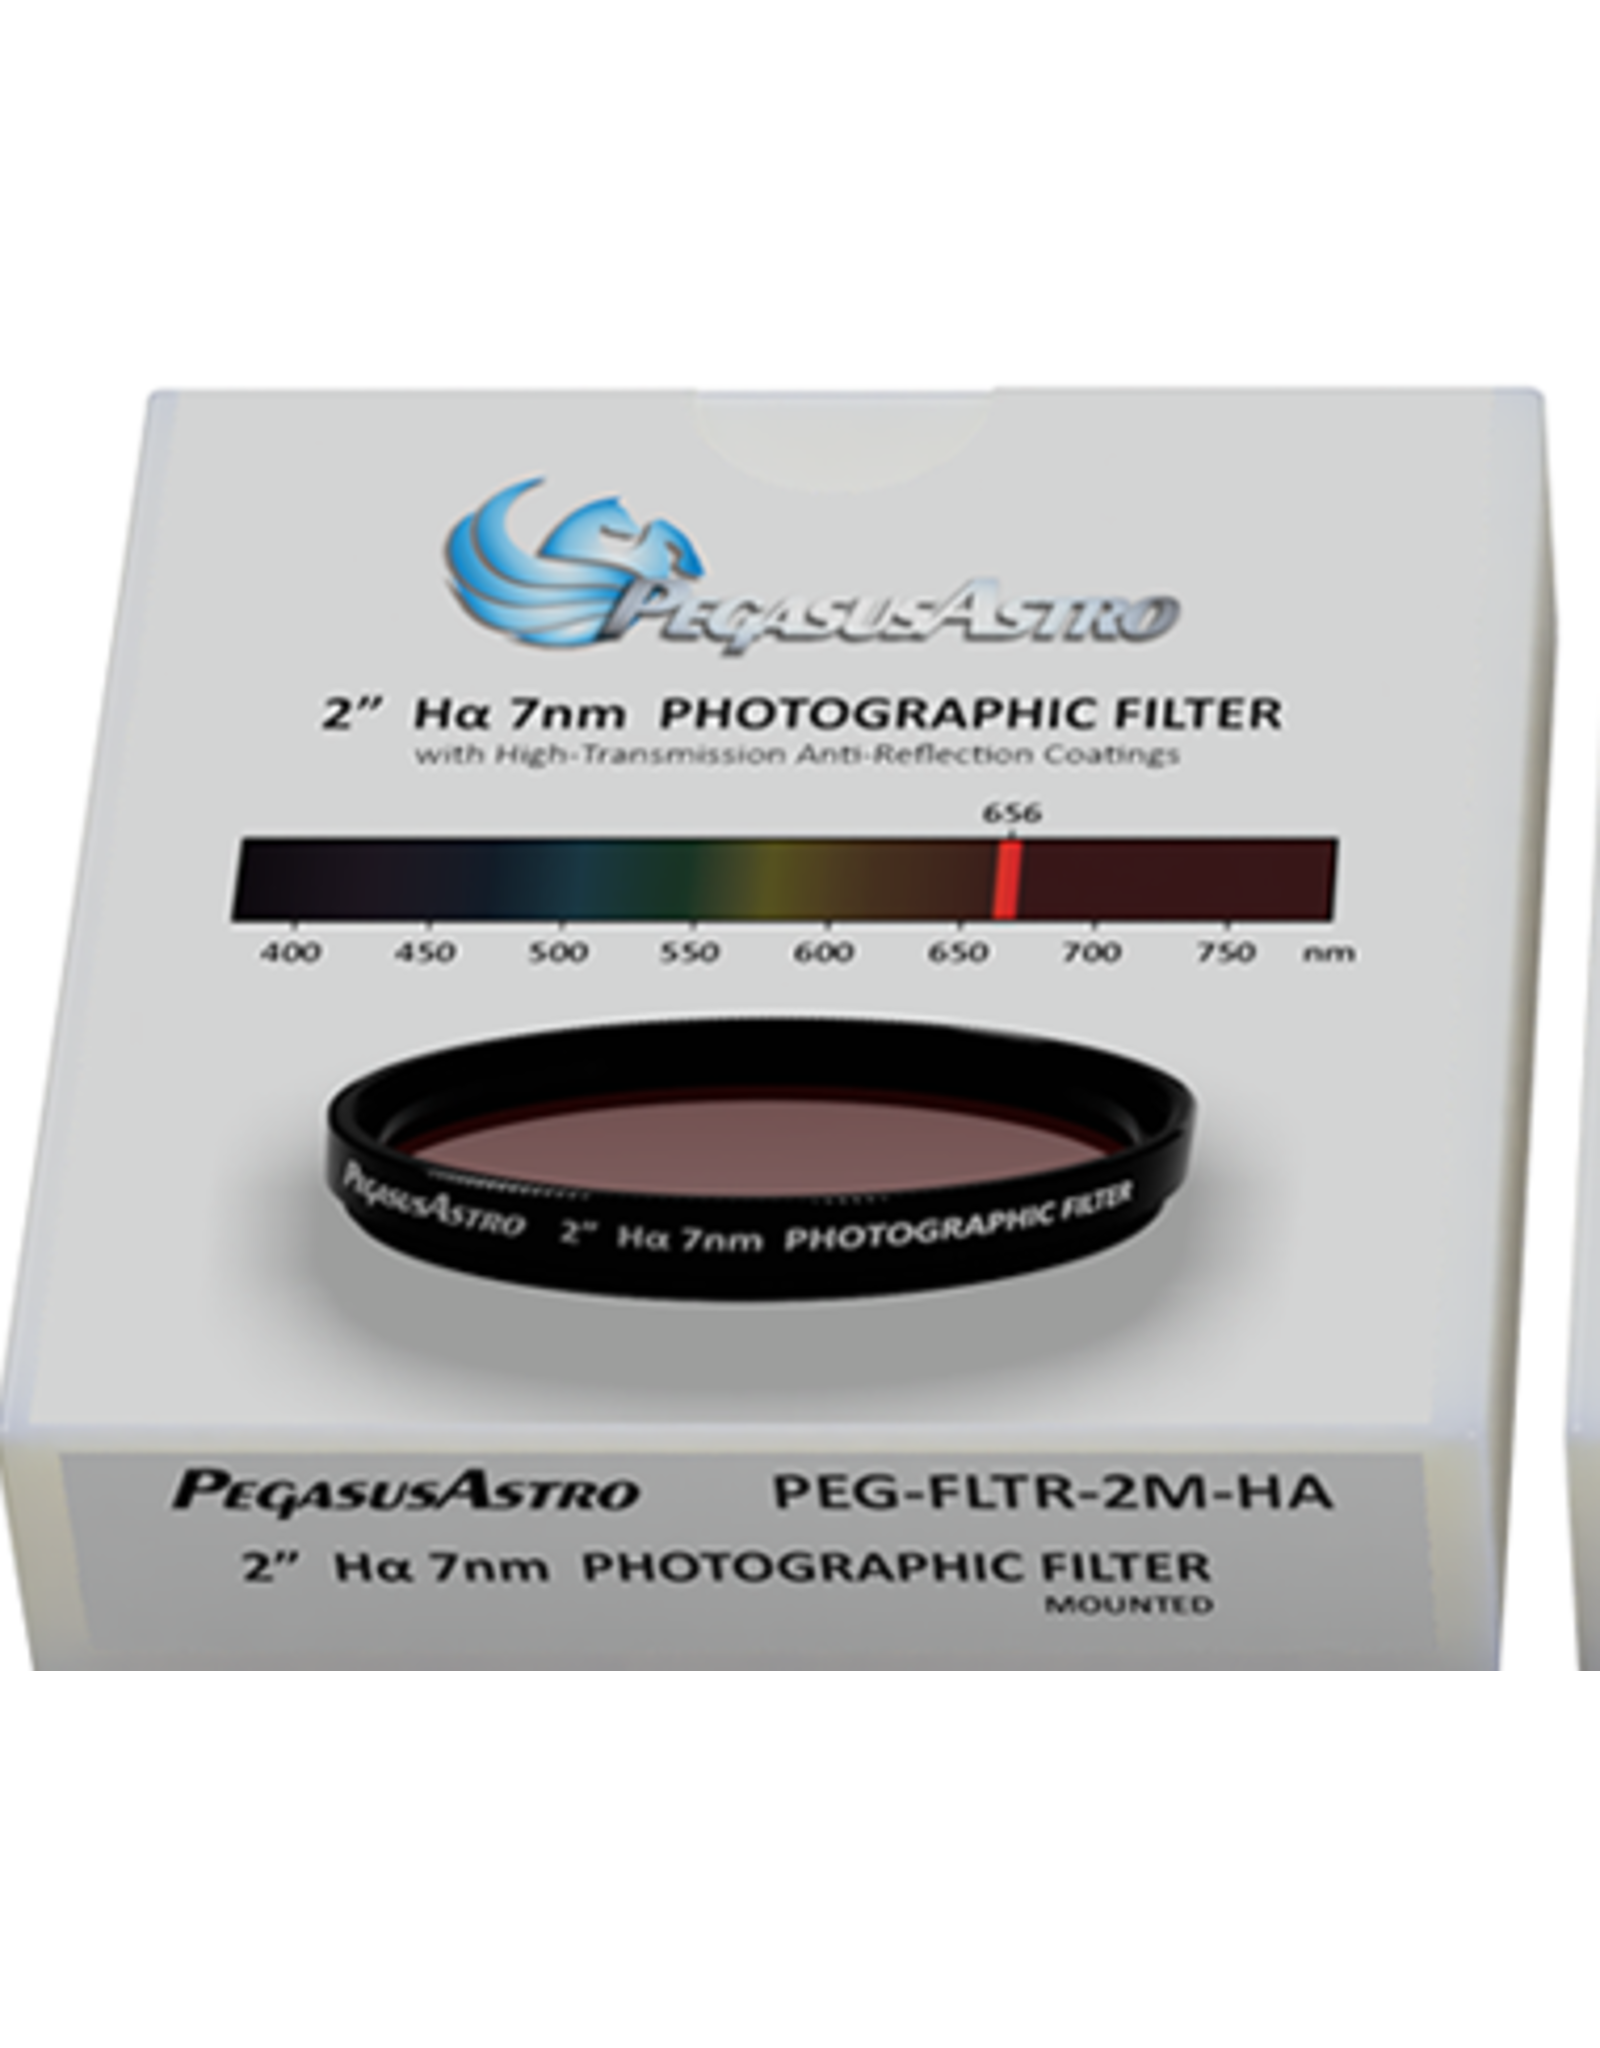 Pegasus Astro Pegasus Astro Ha 2 inch Mounted Photographic Filter (7nm) - PEG-FLTR-2M-Ha